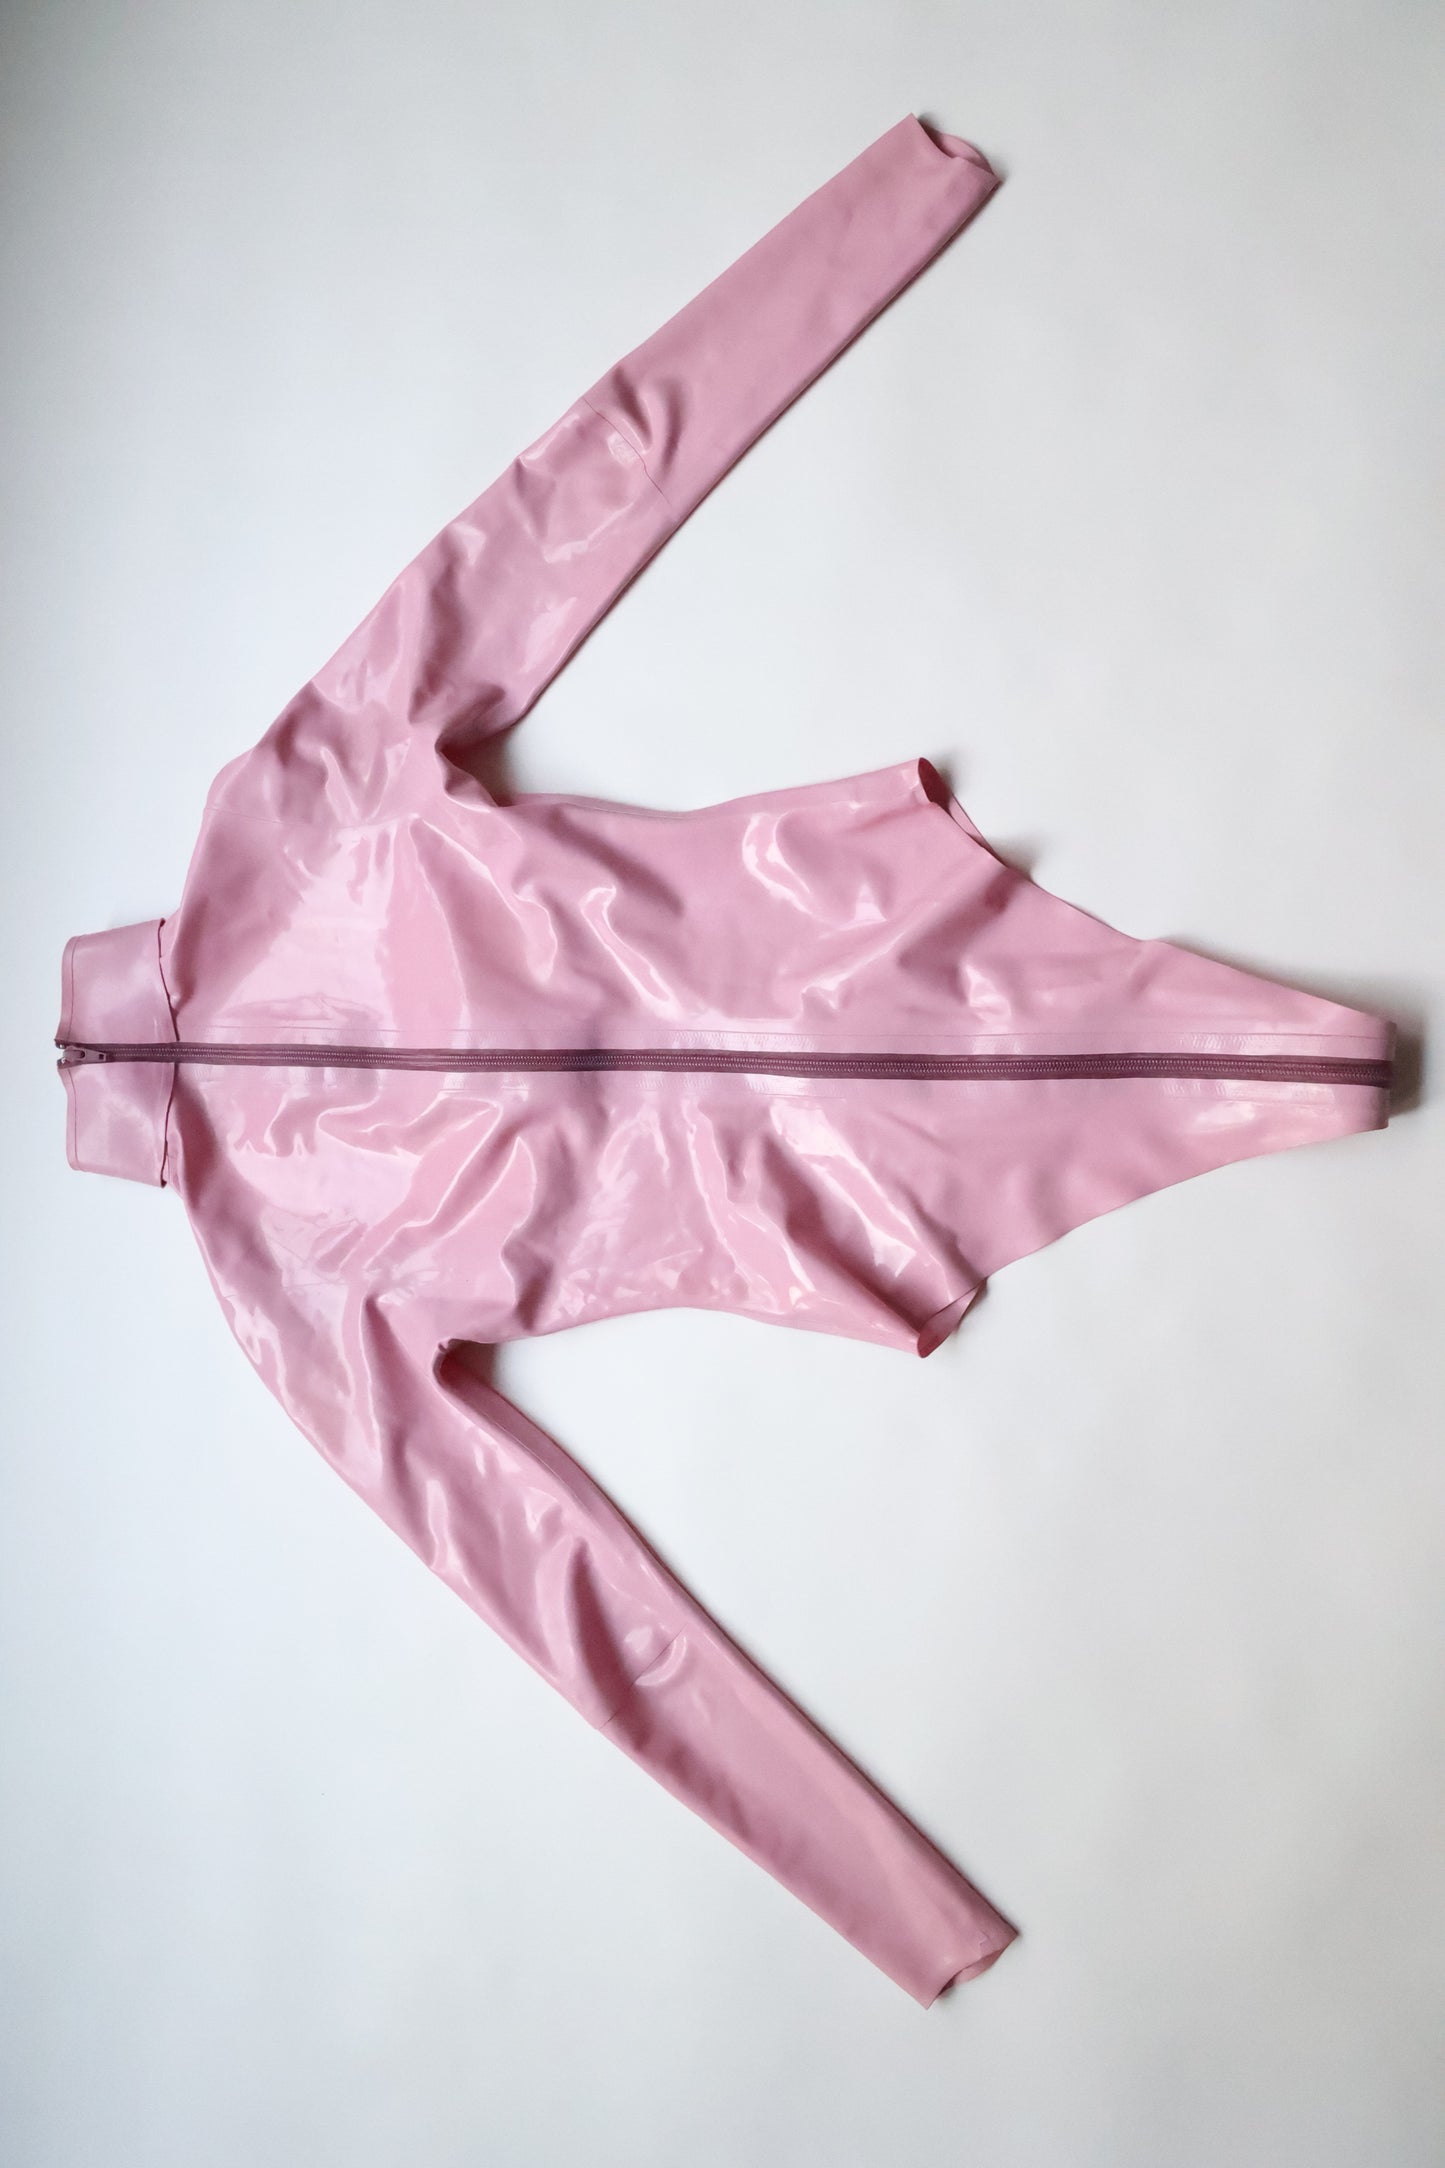 Libidex Veronica Topless Trikot – Damengröße S – Bubblegum Pink